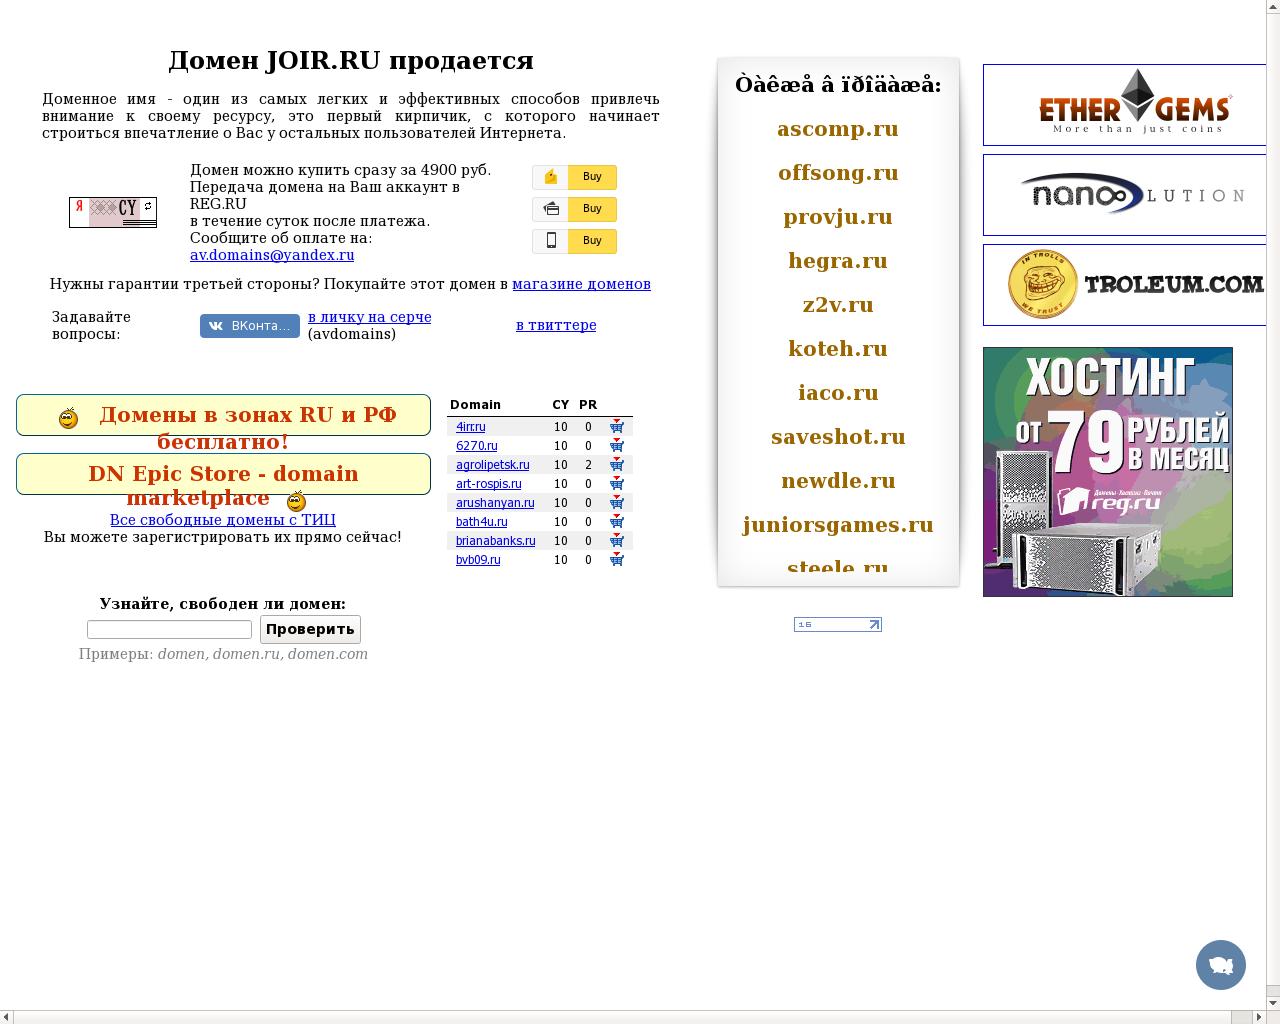 Изображение сайта joir.ru в разрешении 1280x1024